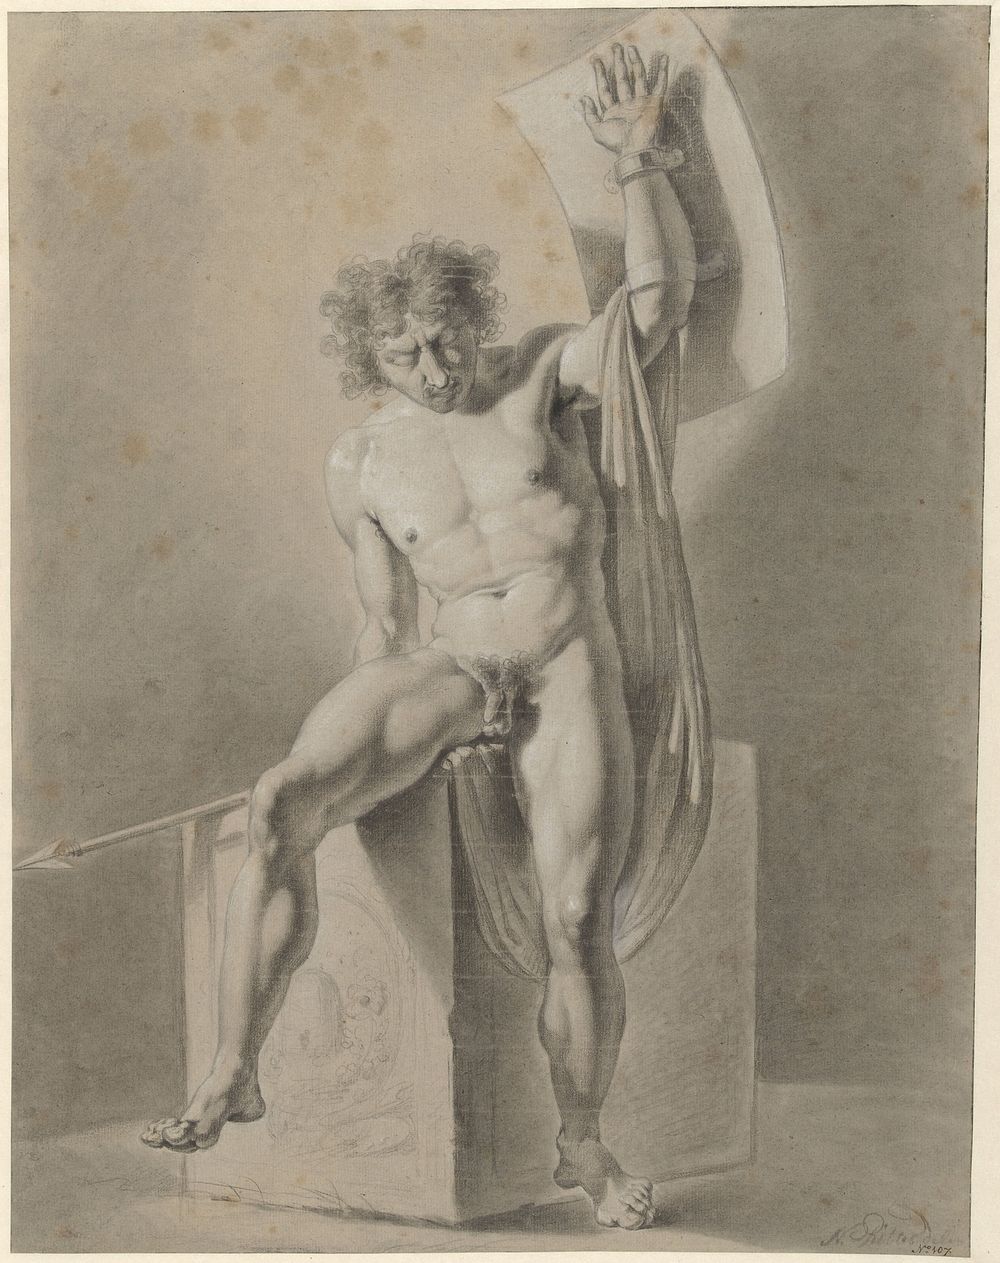 Mannelijk naakt, zittend op een blok, met speer en schild (1759 - 1809) by George Nikolaus Ritter